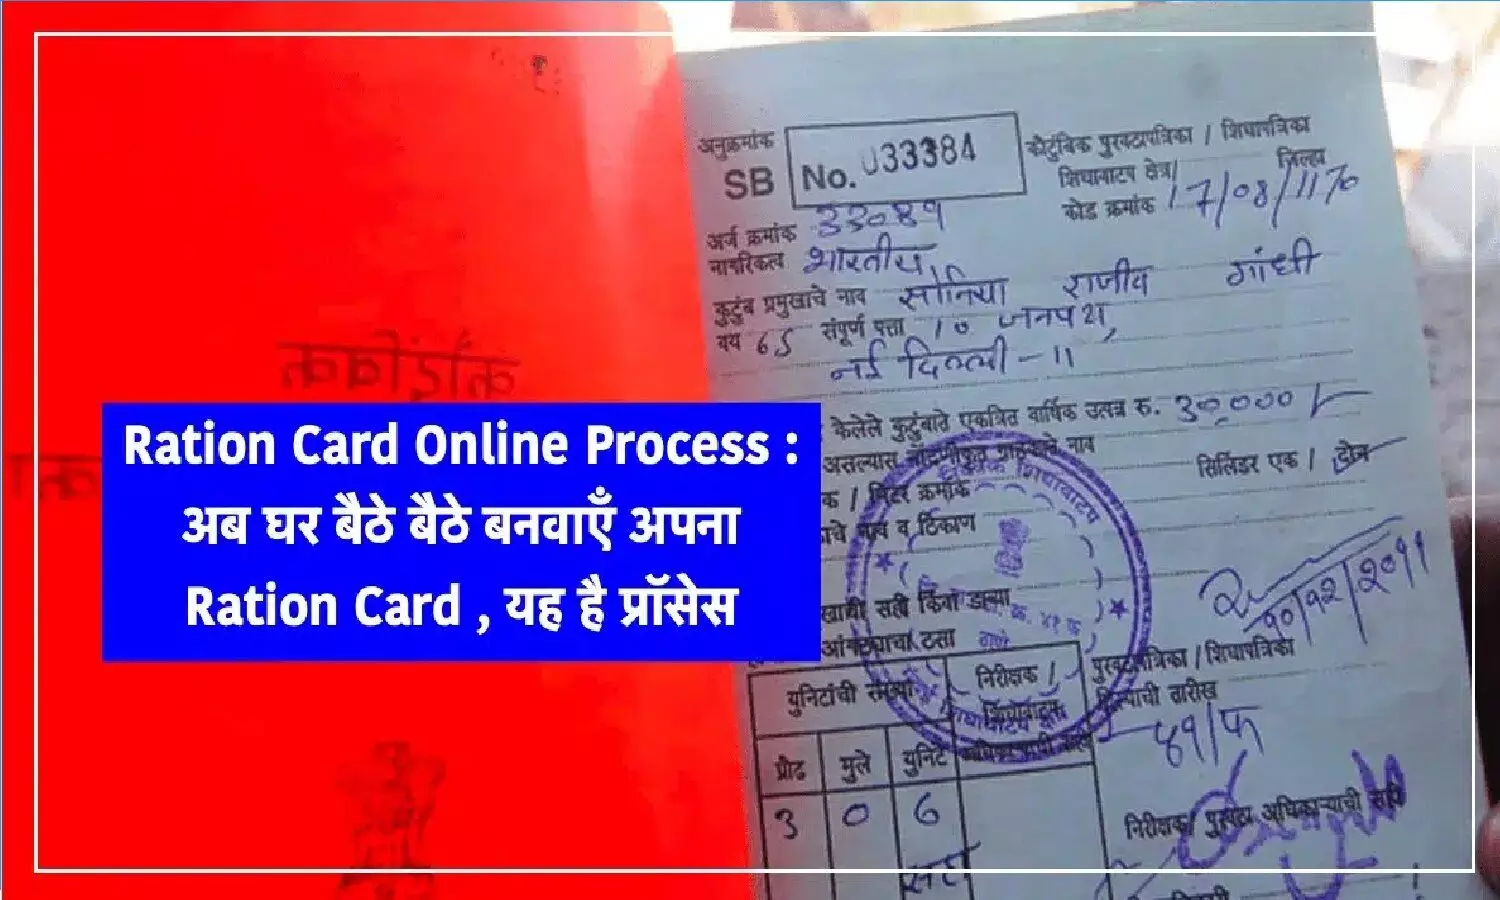 Online Ration Card Process: राशन कार्ड के लिए ऑनलाइन आवेदन कैसे करें? आओ पूरी प्रोसेस बताएं